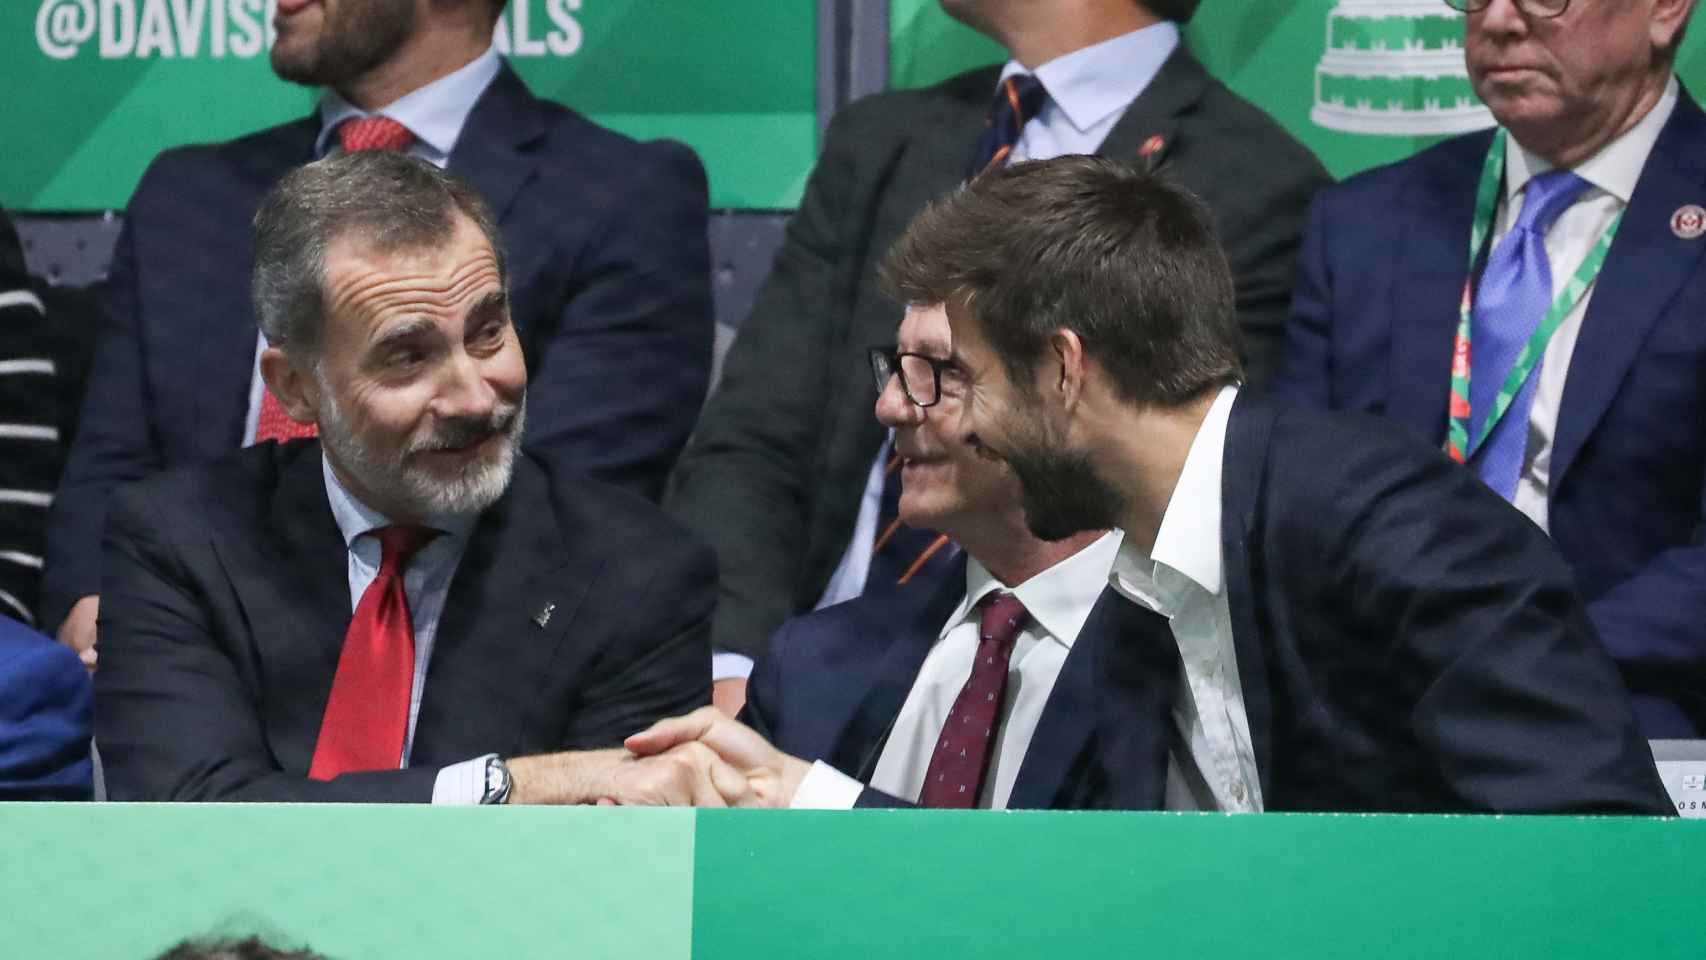 Gerard Piqué saluda al rey Felipe VI en la Copa Davis celebrada en Madrid, el 24 de noviembre de 2019.